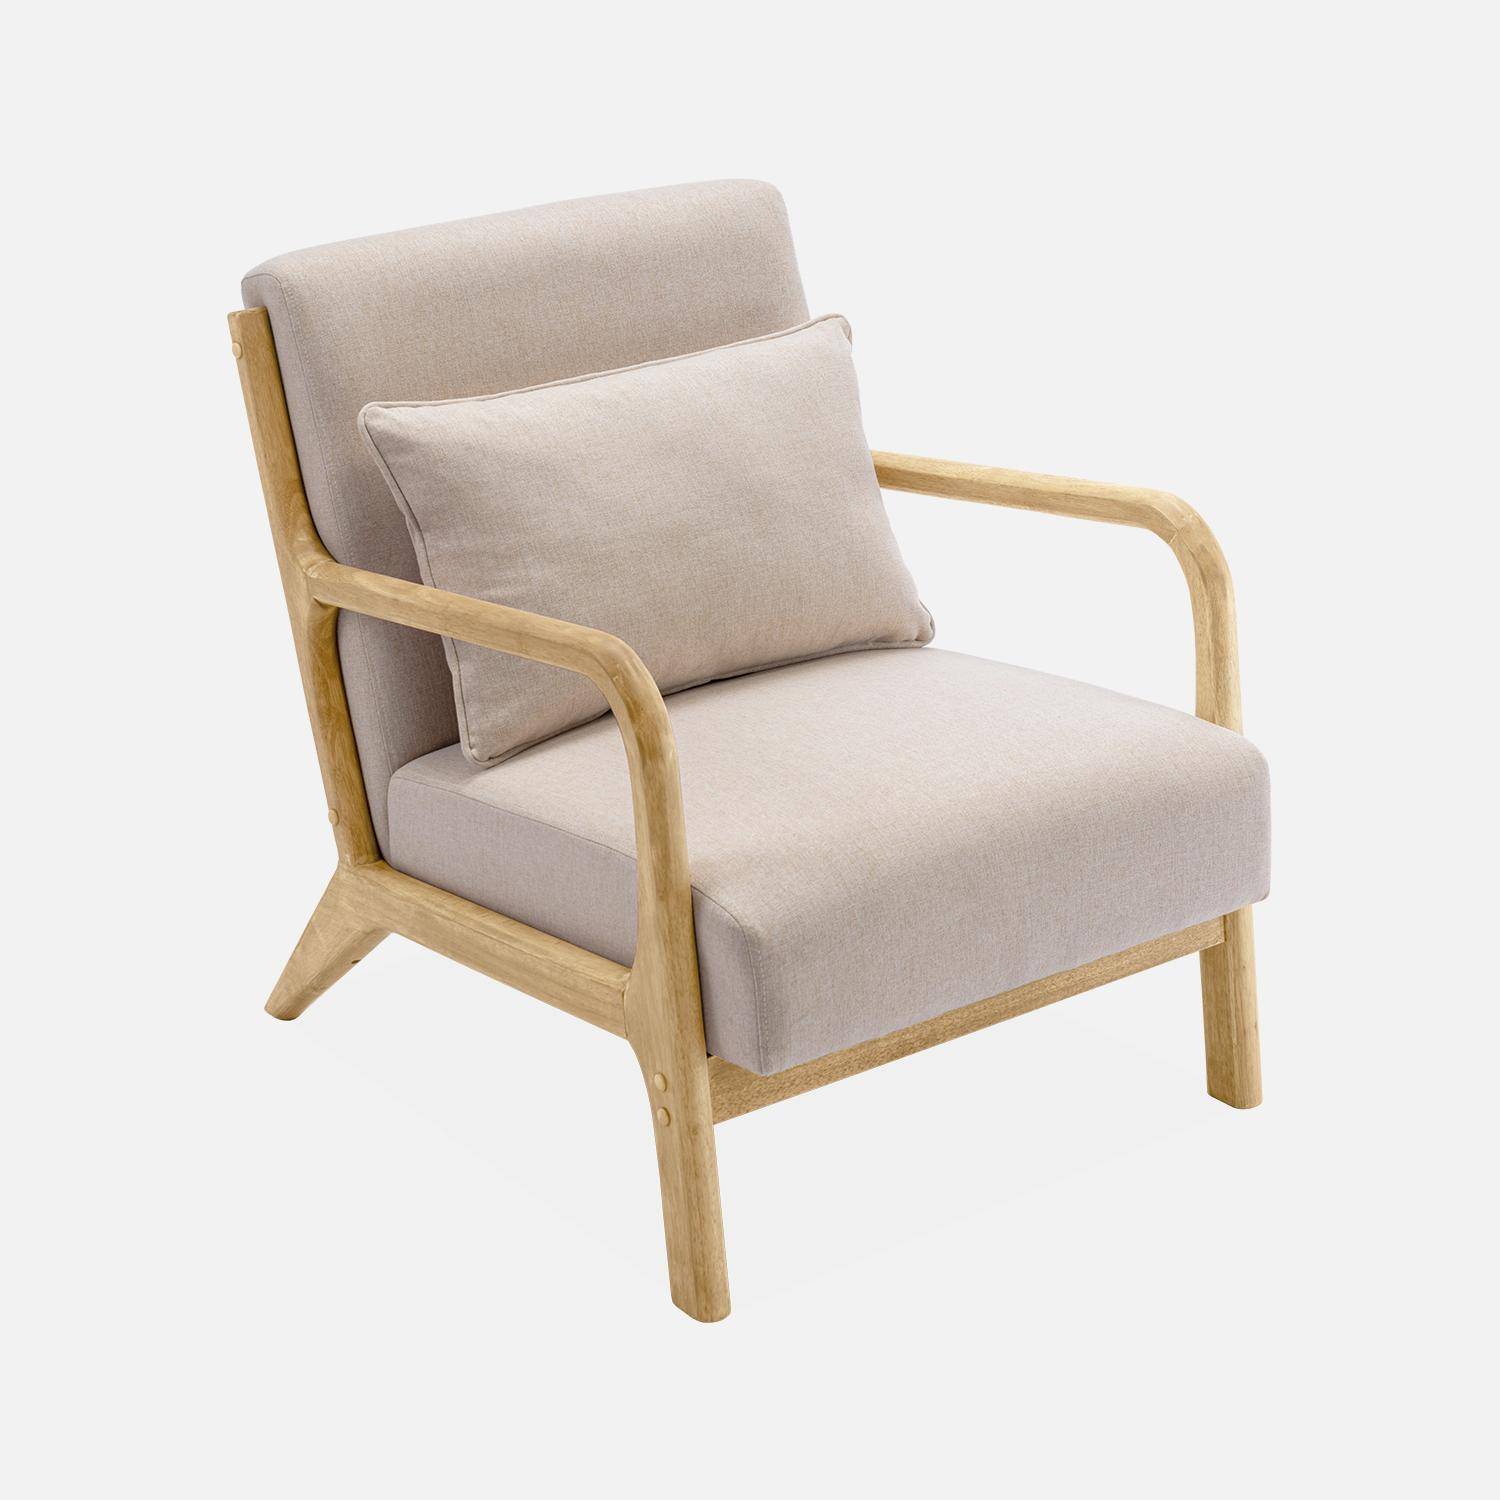 Poltrona di design in legno e tessuto, 1 seduta fissa diritta, pieds compas scandinave, beige Photo4